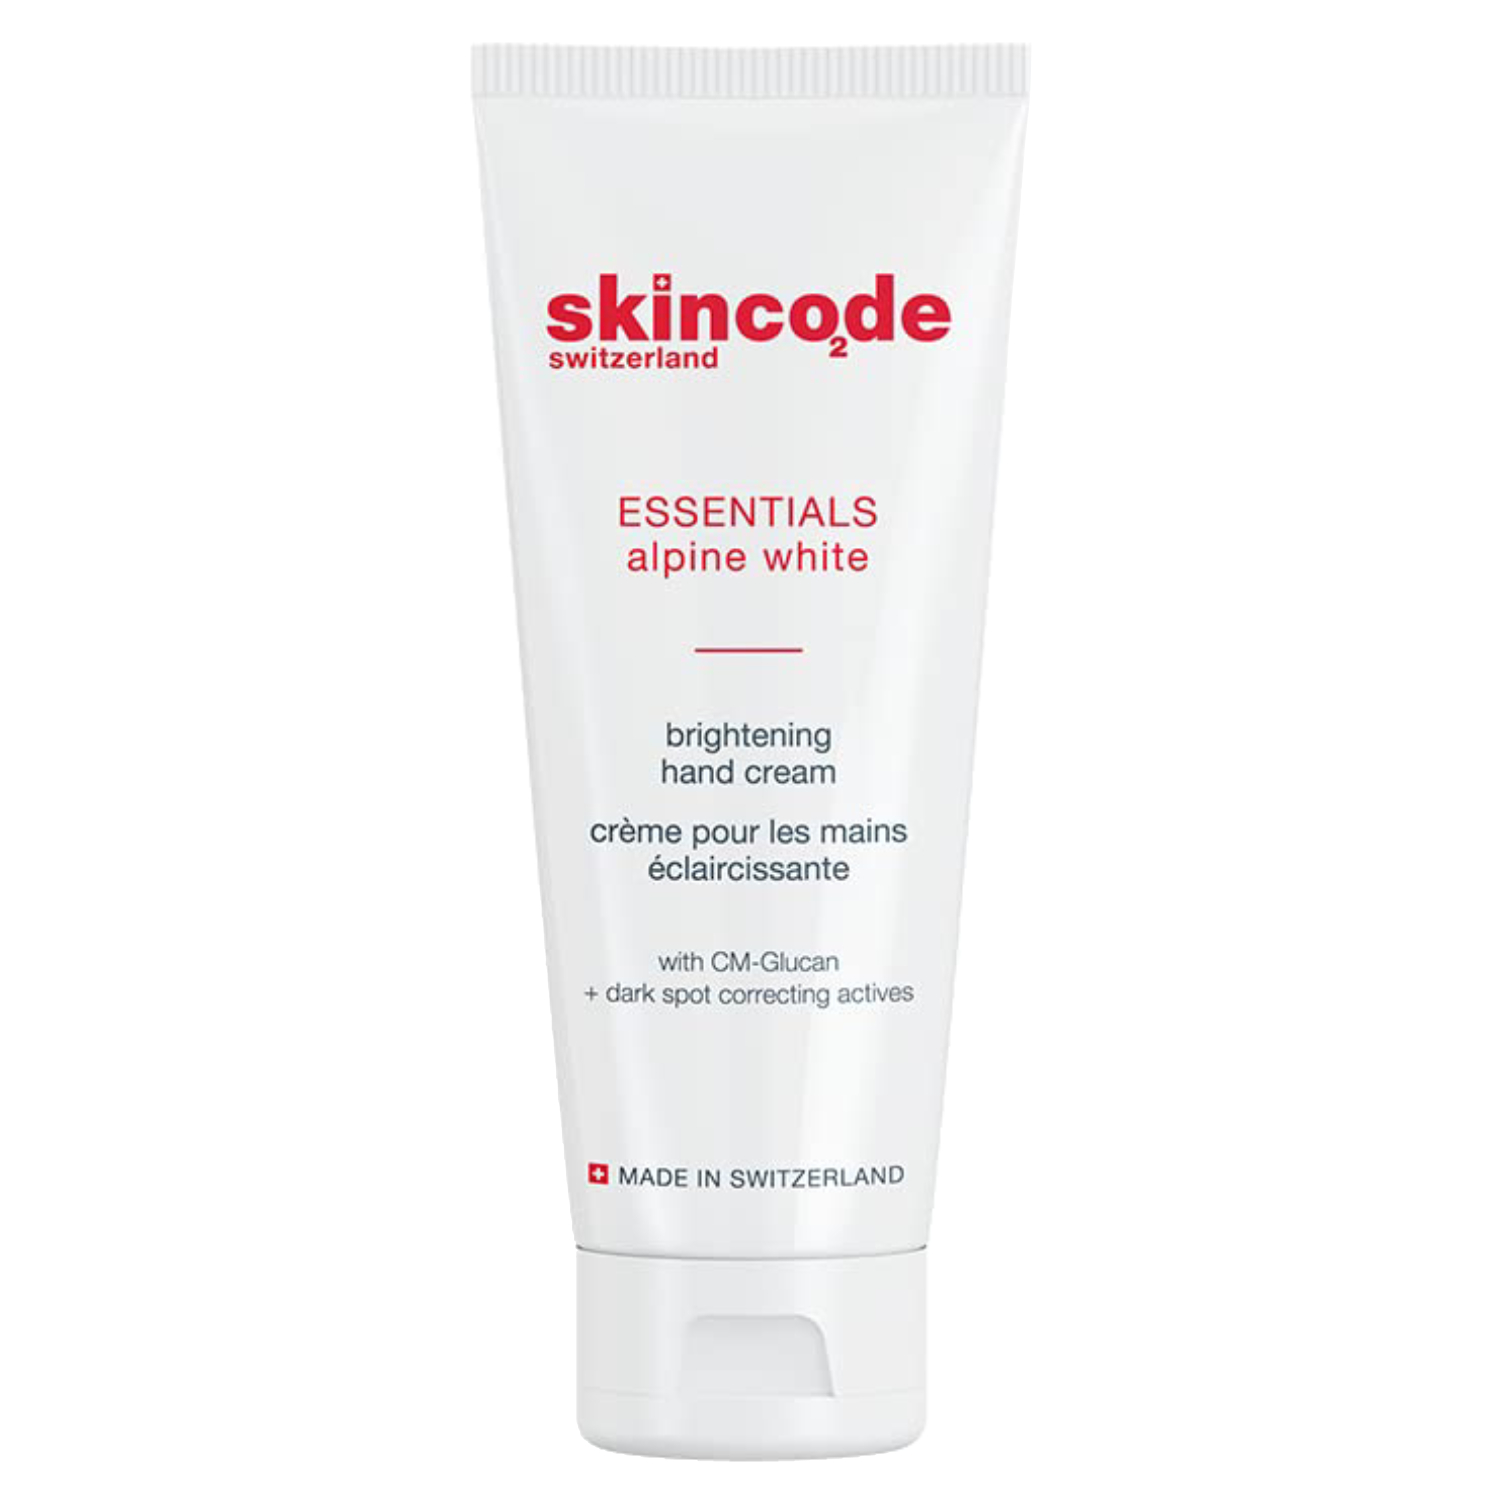 Skincode Essentials Alpine White Brightening Hand Cream 75ml